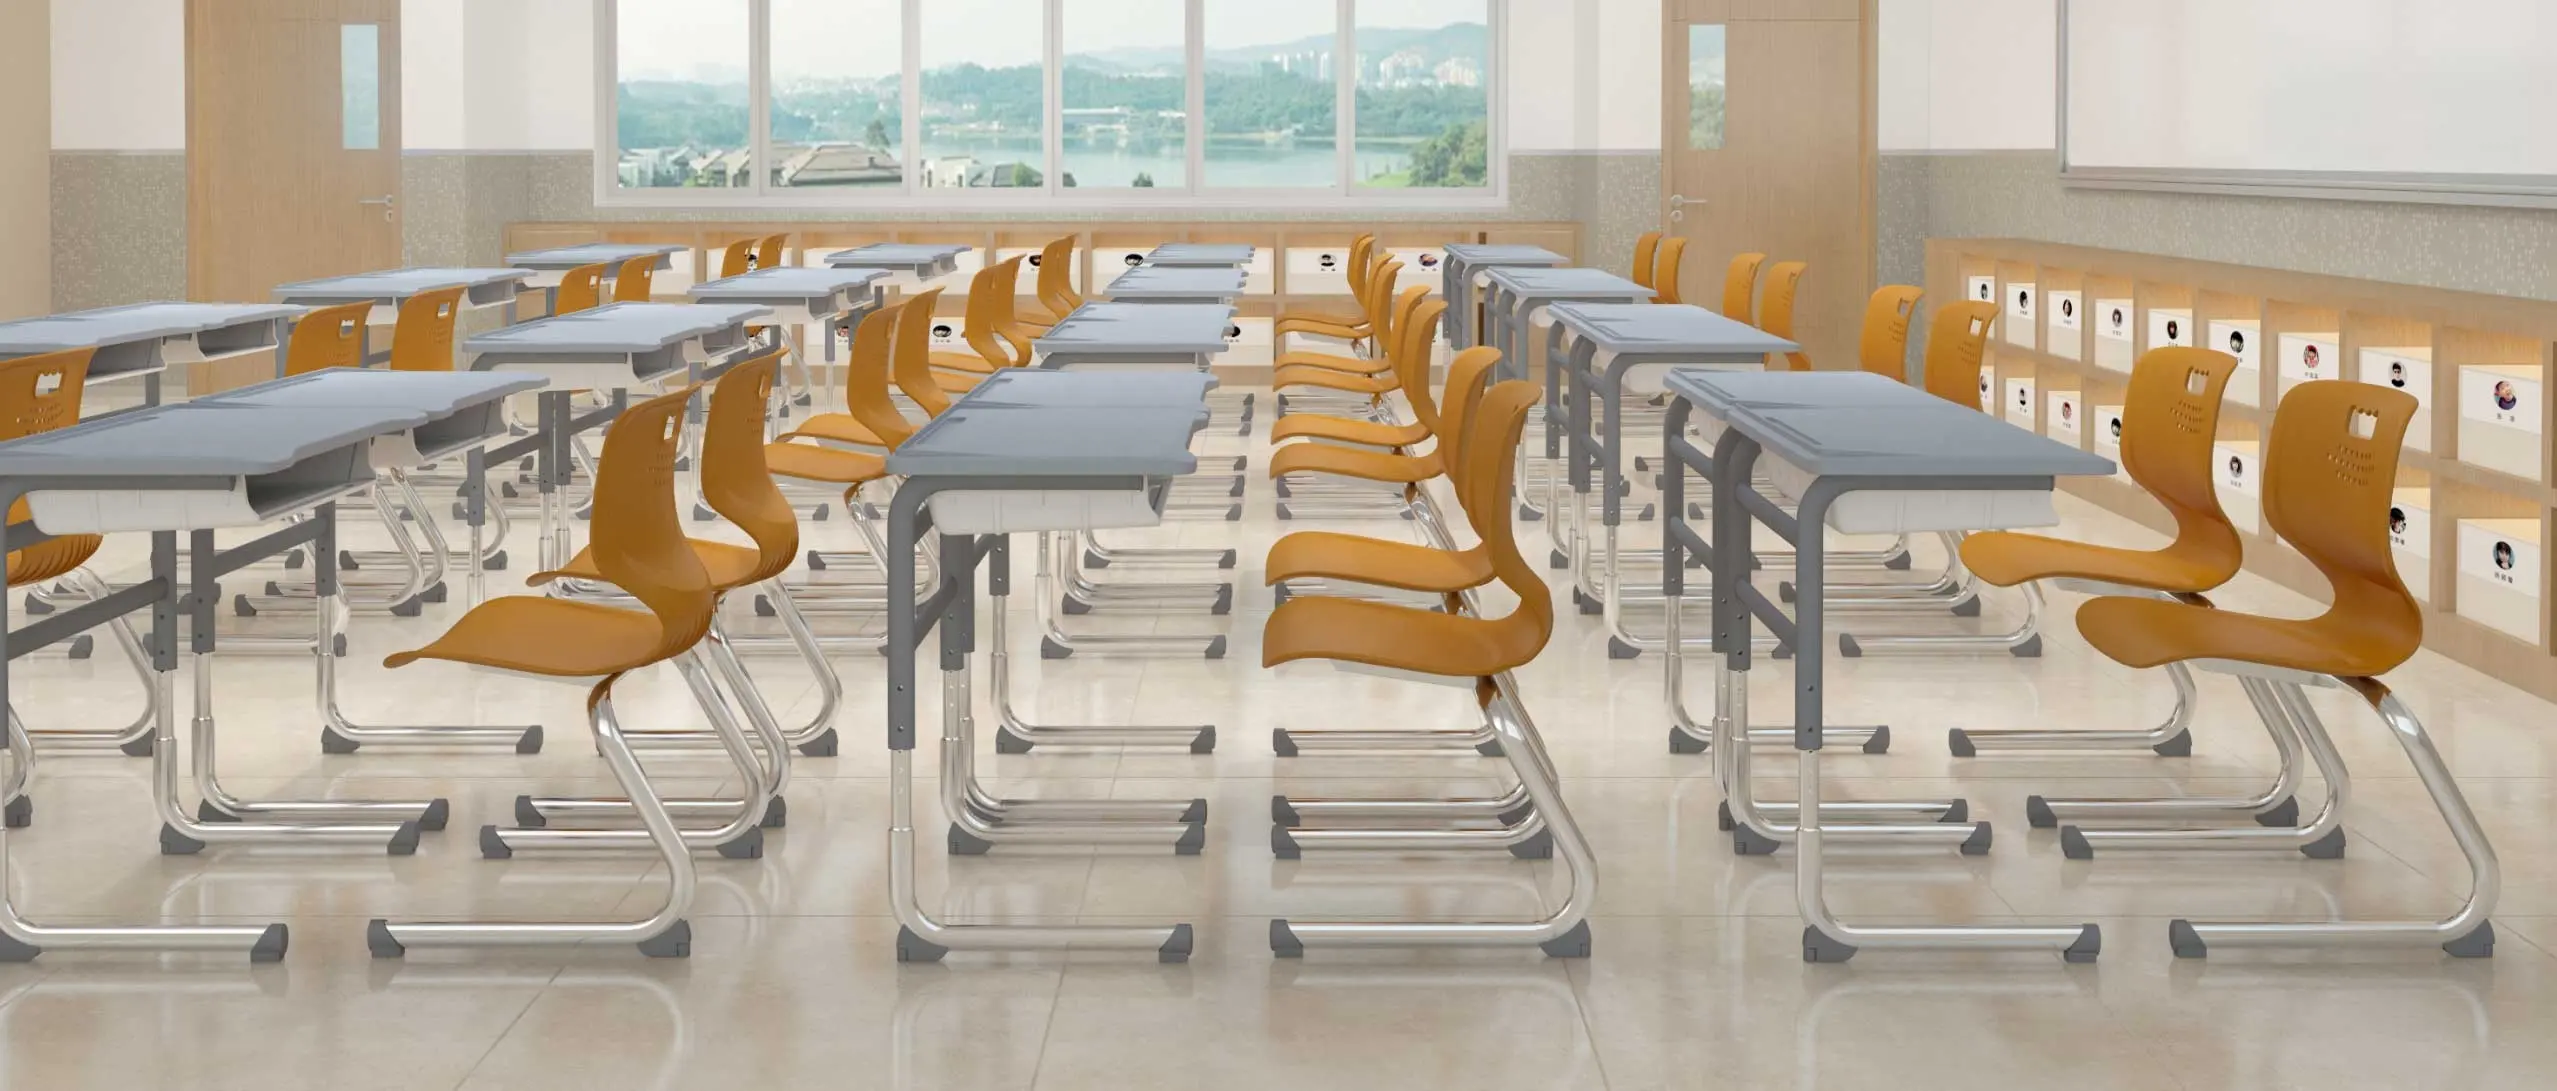 Студенческий стол и стул школьная мебель высокого качества современный студенческий стол стул набор